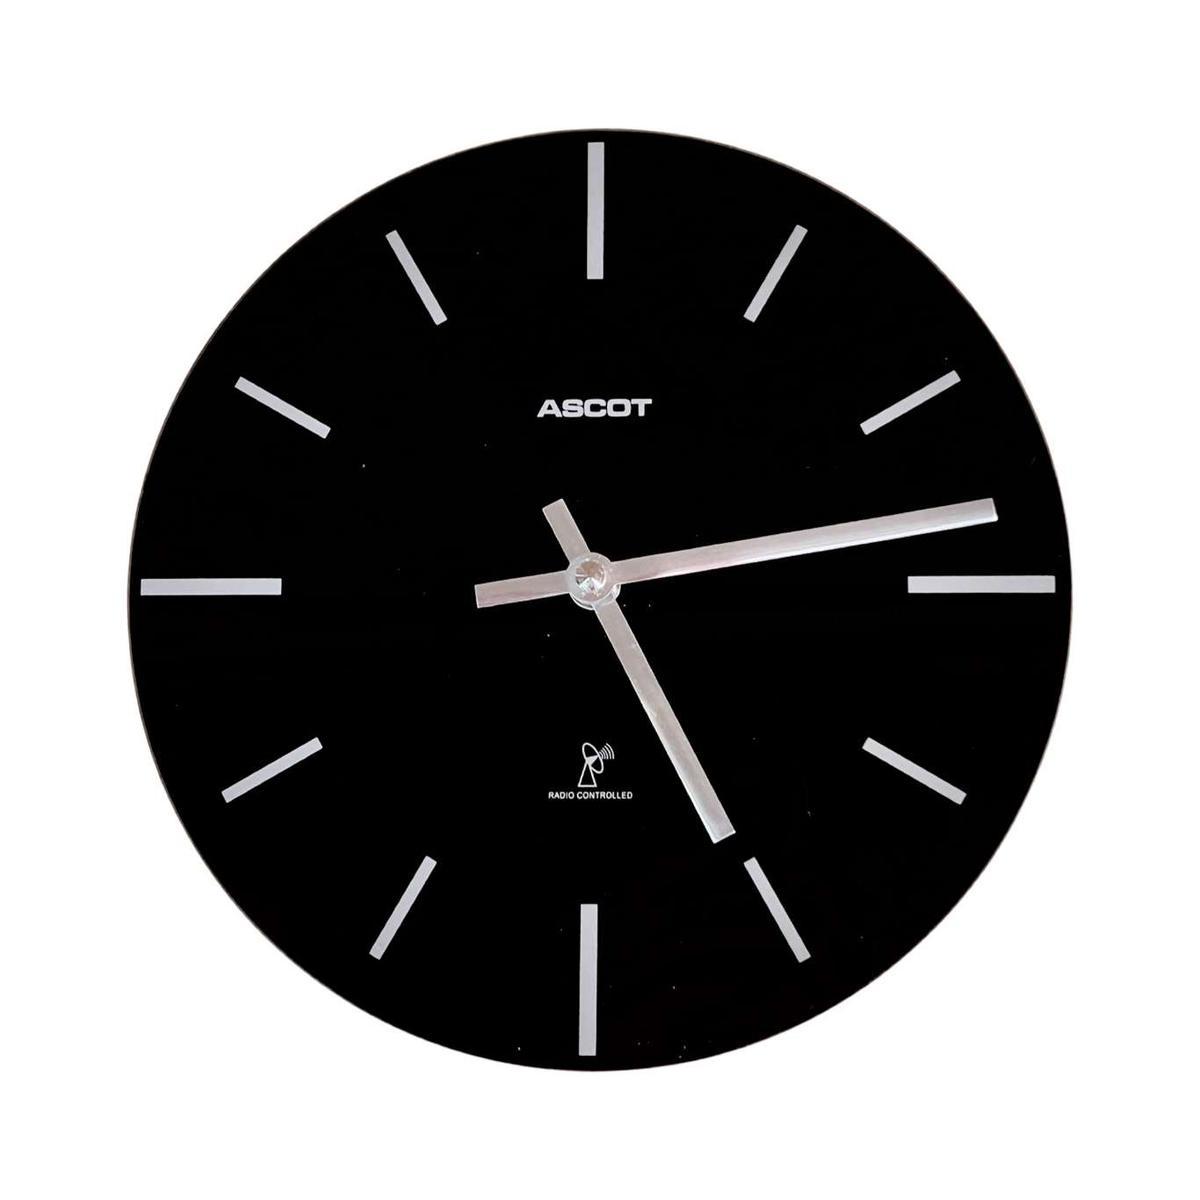 Designerski, minimalistyczny zegar ścienny, Ascot Niemcy 4 Full Screen